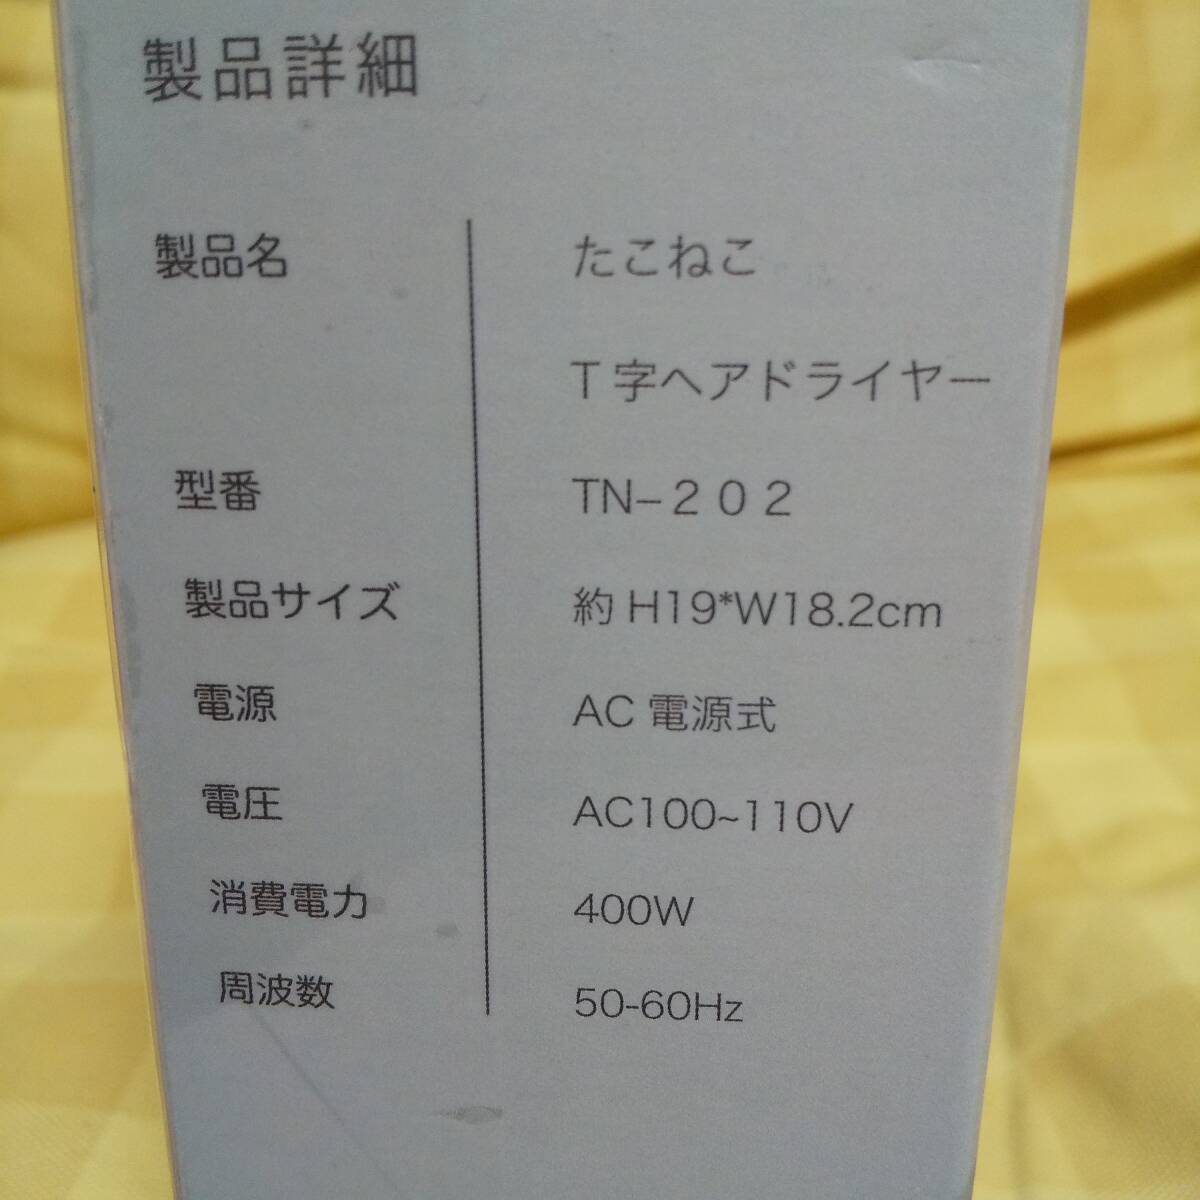  стоимость доставки 510 иен ~ новый товар нераспечатанный ....T знак фен лёд зеленый 